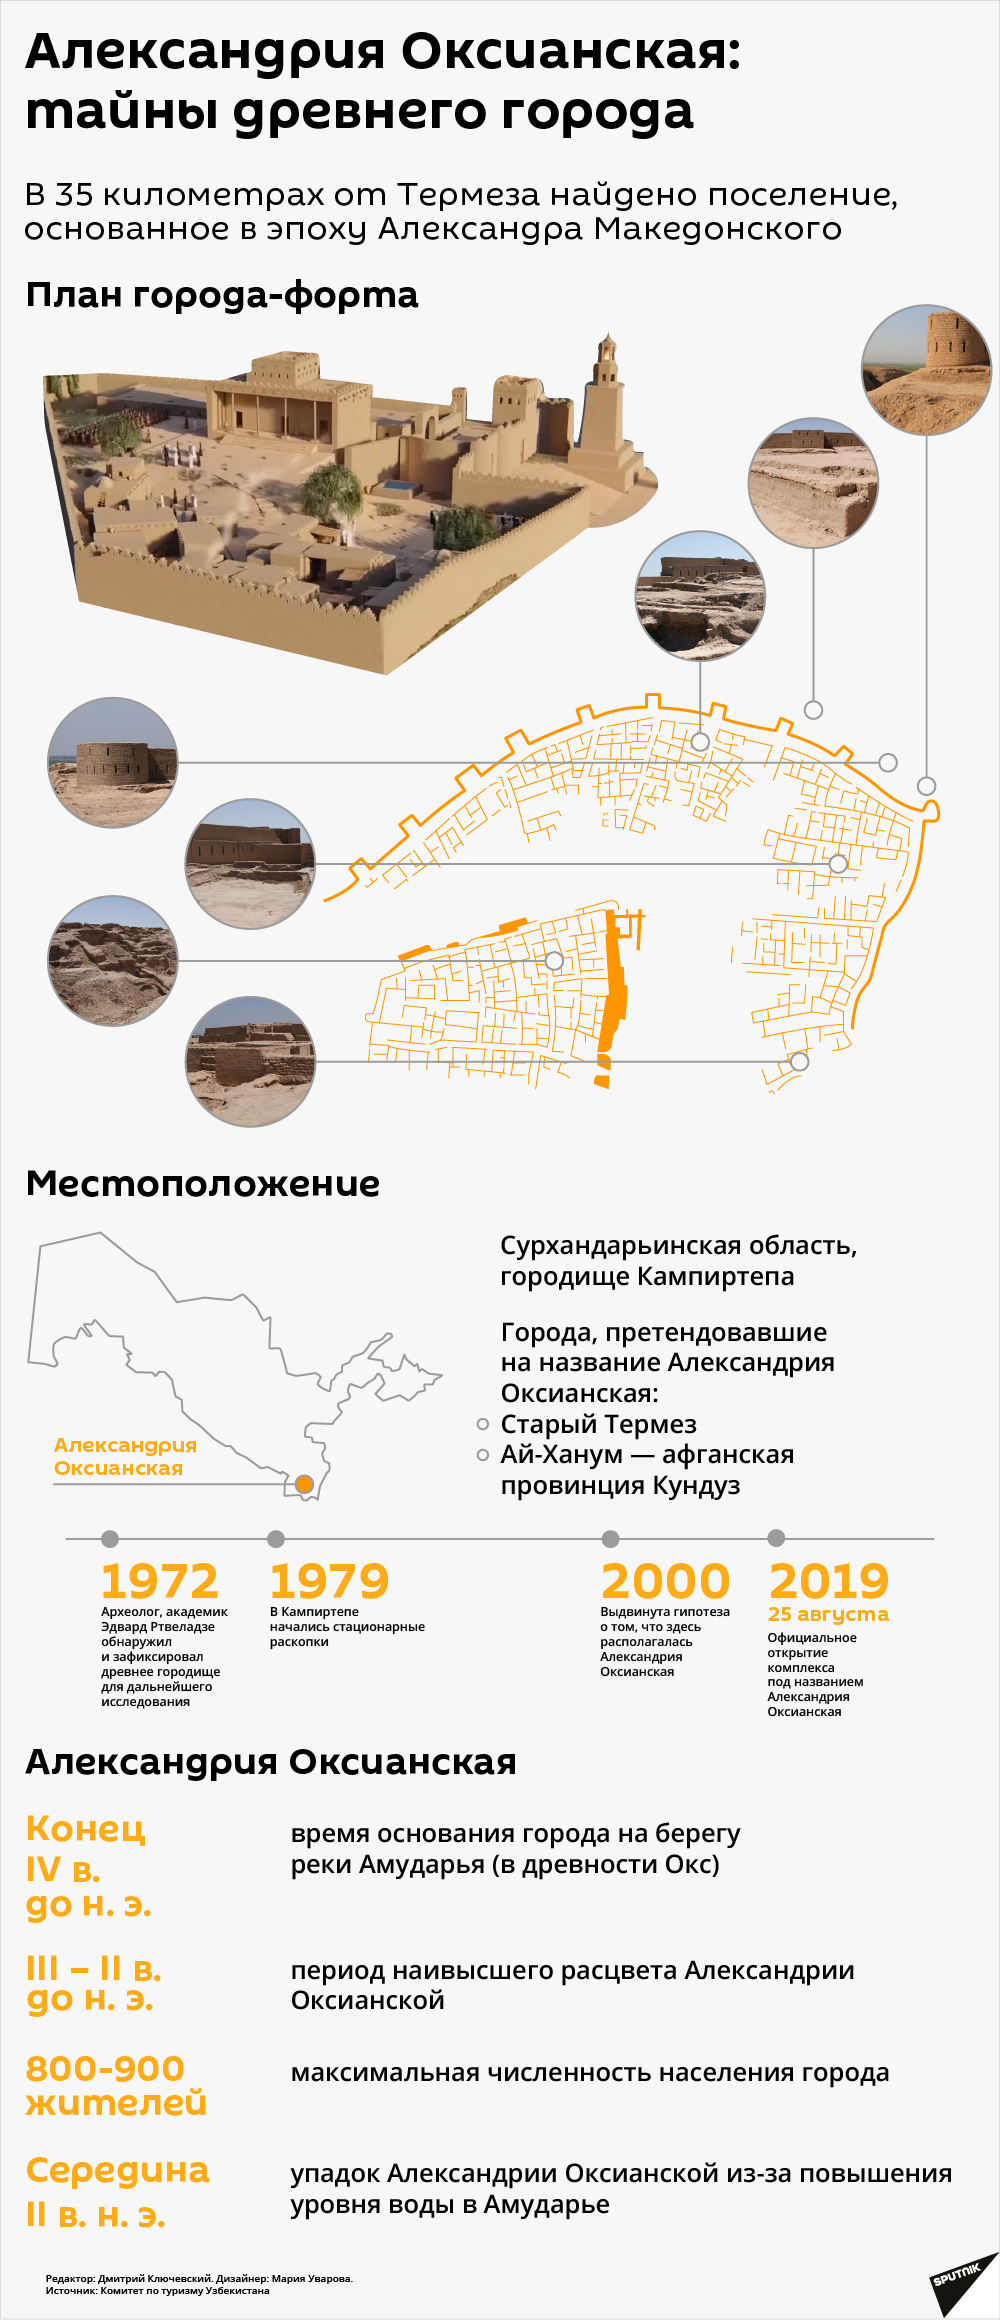 Александрия Оксианская: тайны древнего города - Sputnik Узбекистан